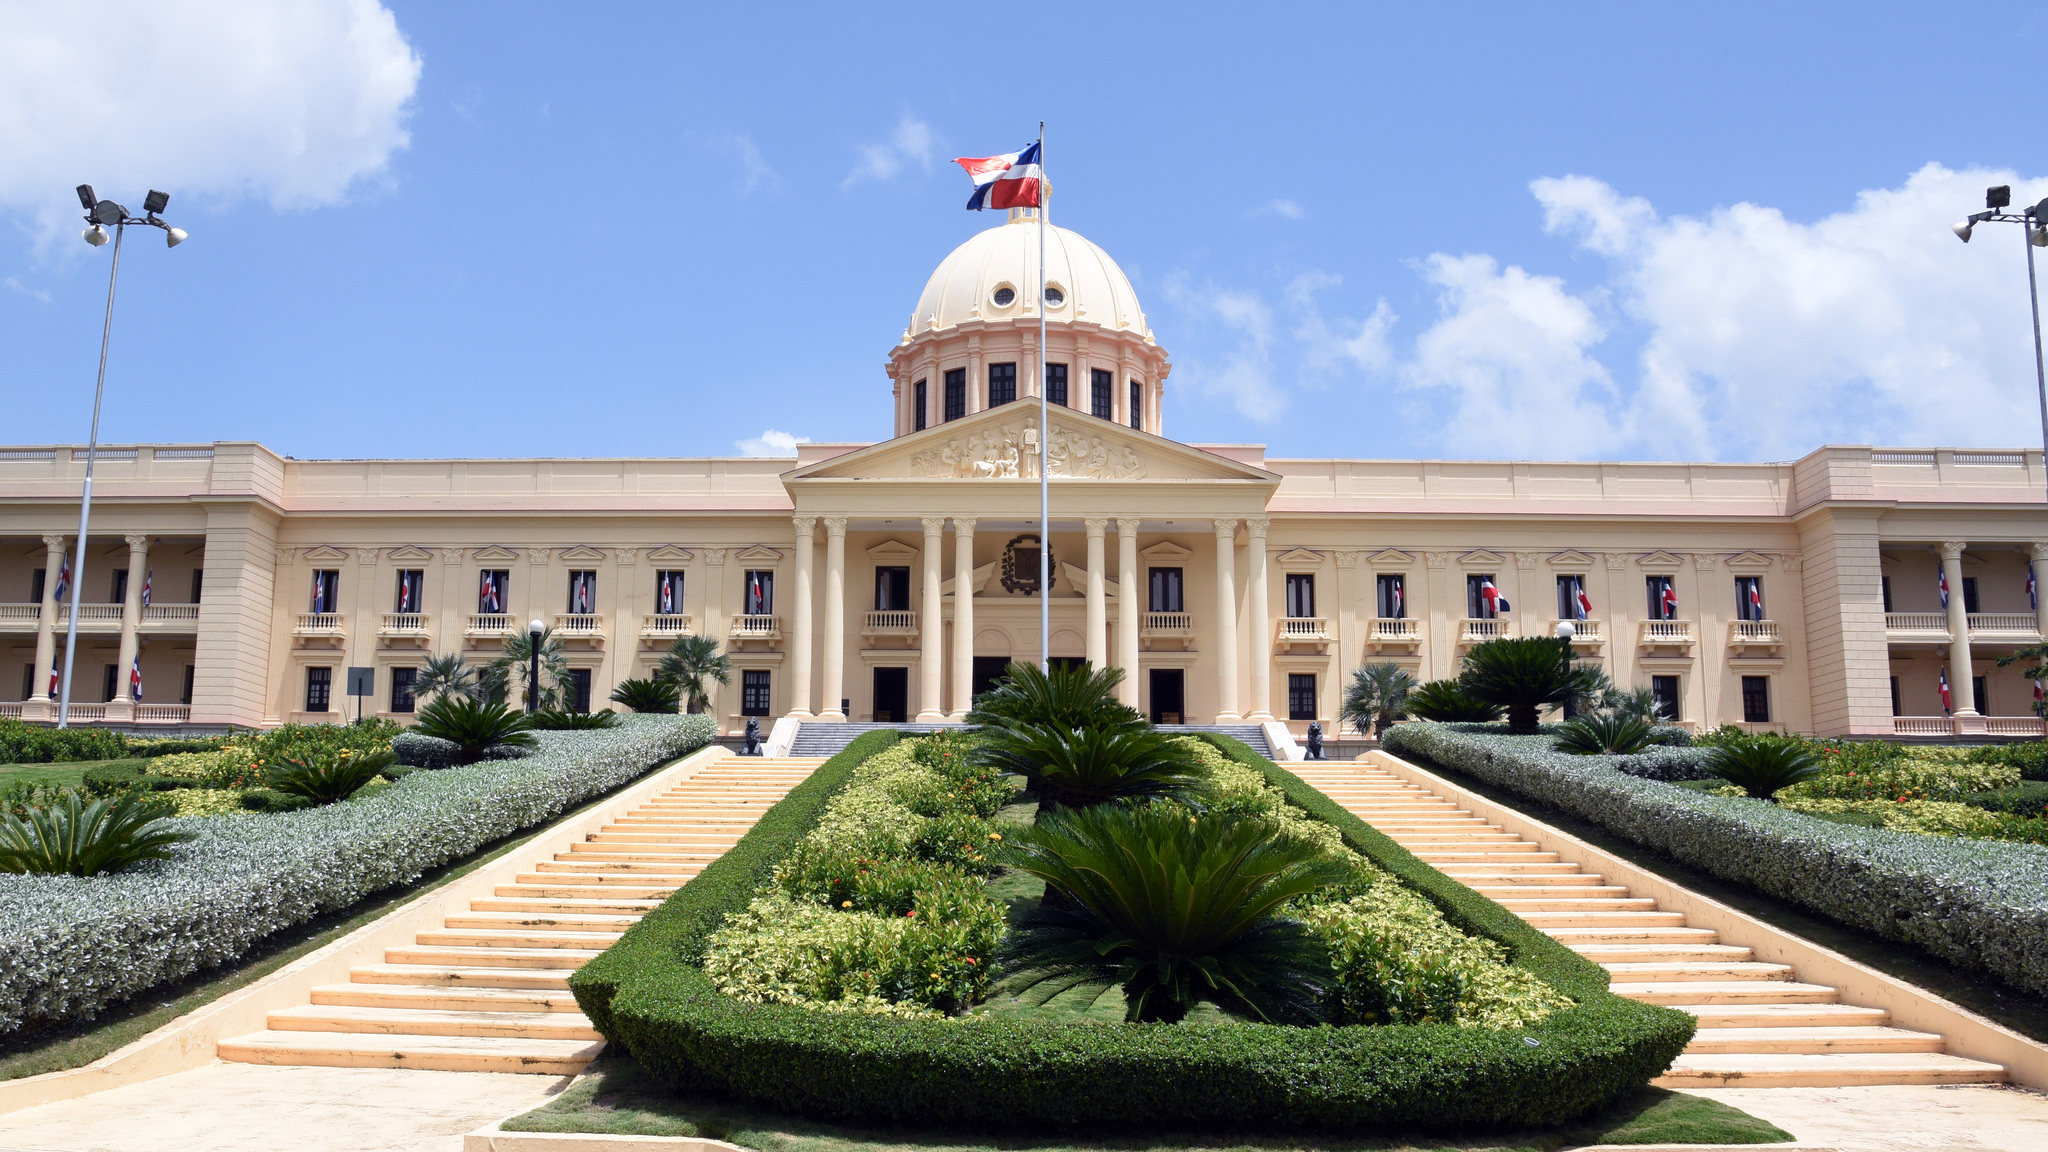 REPÚBLICA DOMINICANA: Presidente Danilo Medina designa nuevos gobernadores en 7 provincias, cónsul en Juana Méndez, Haití y subdirector IAD